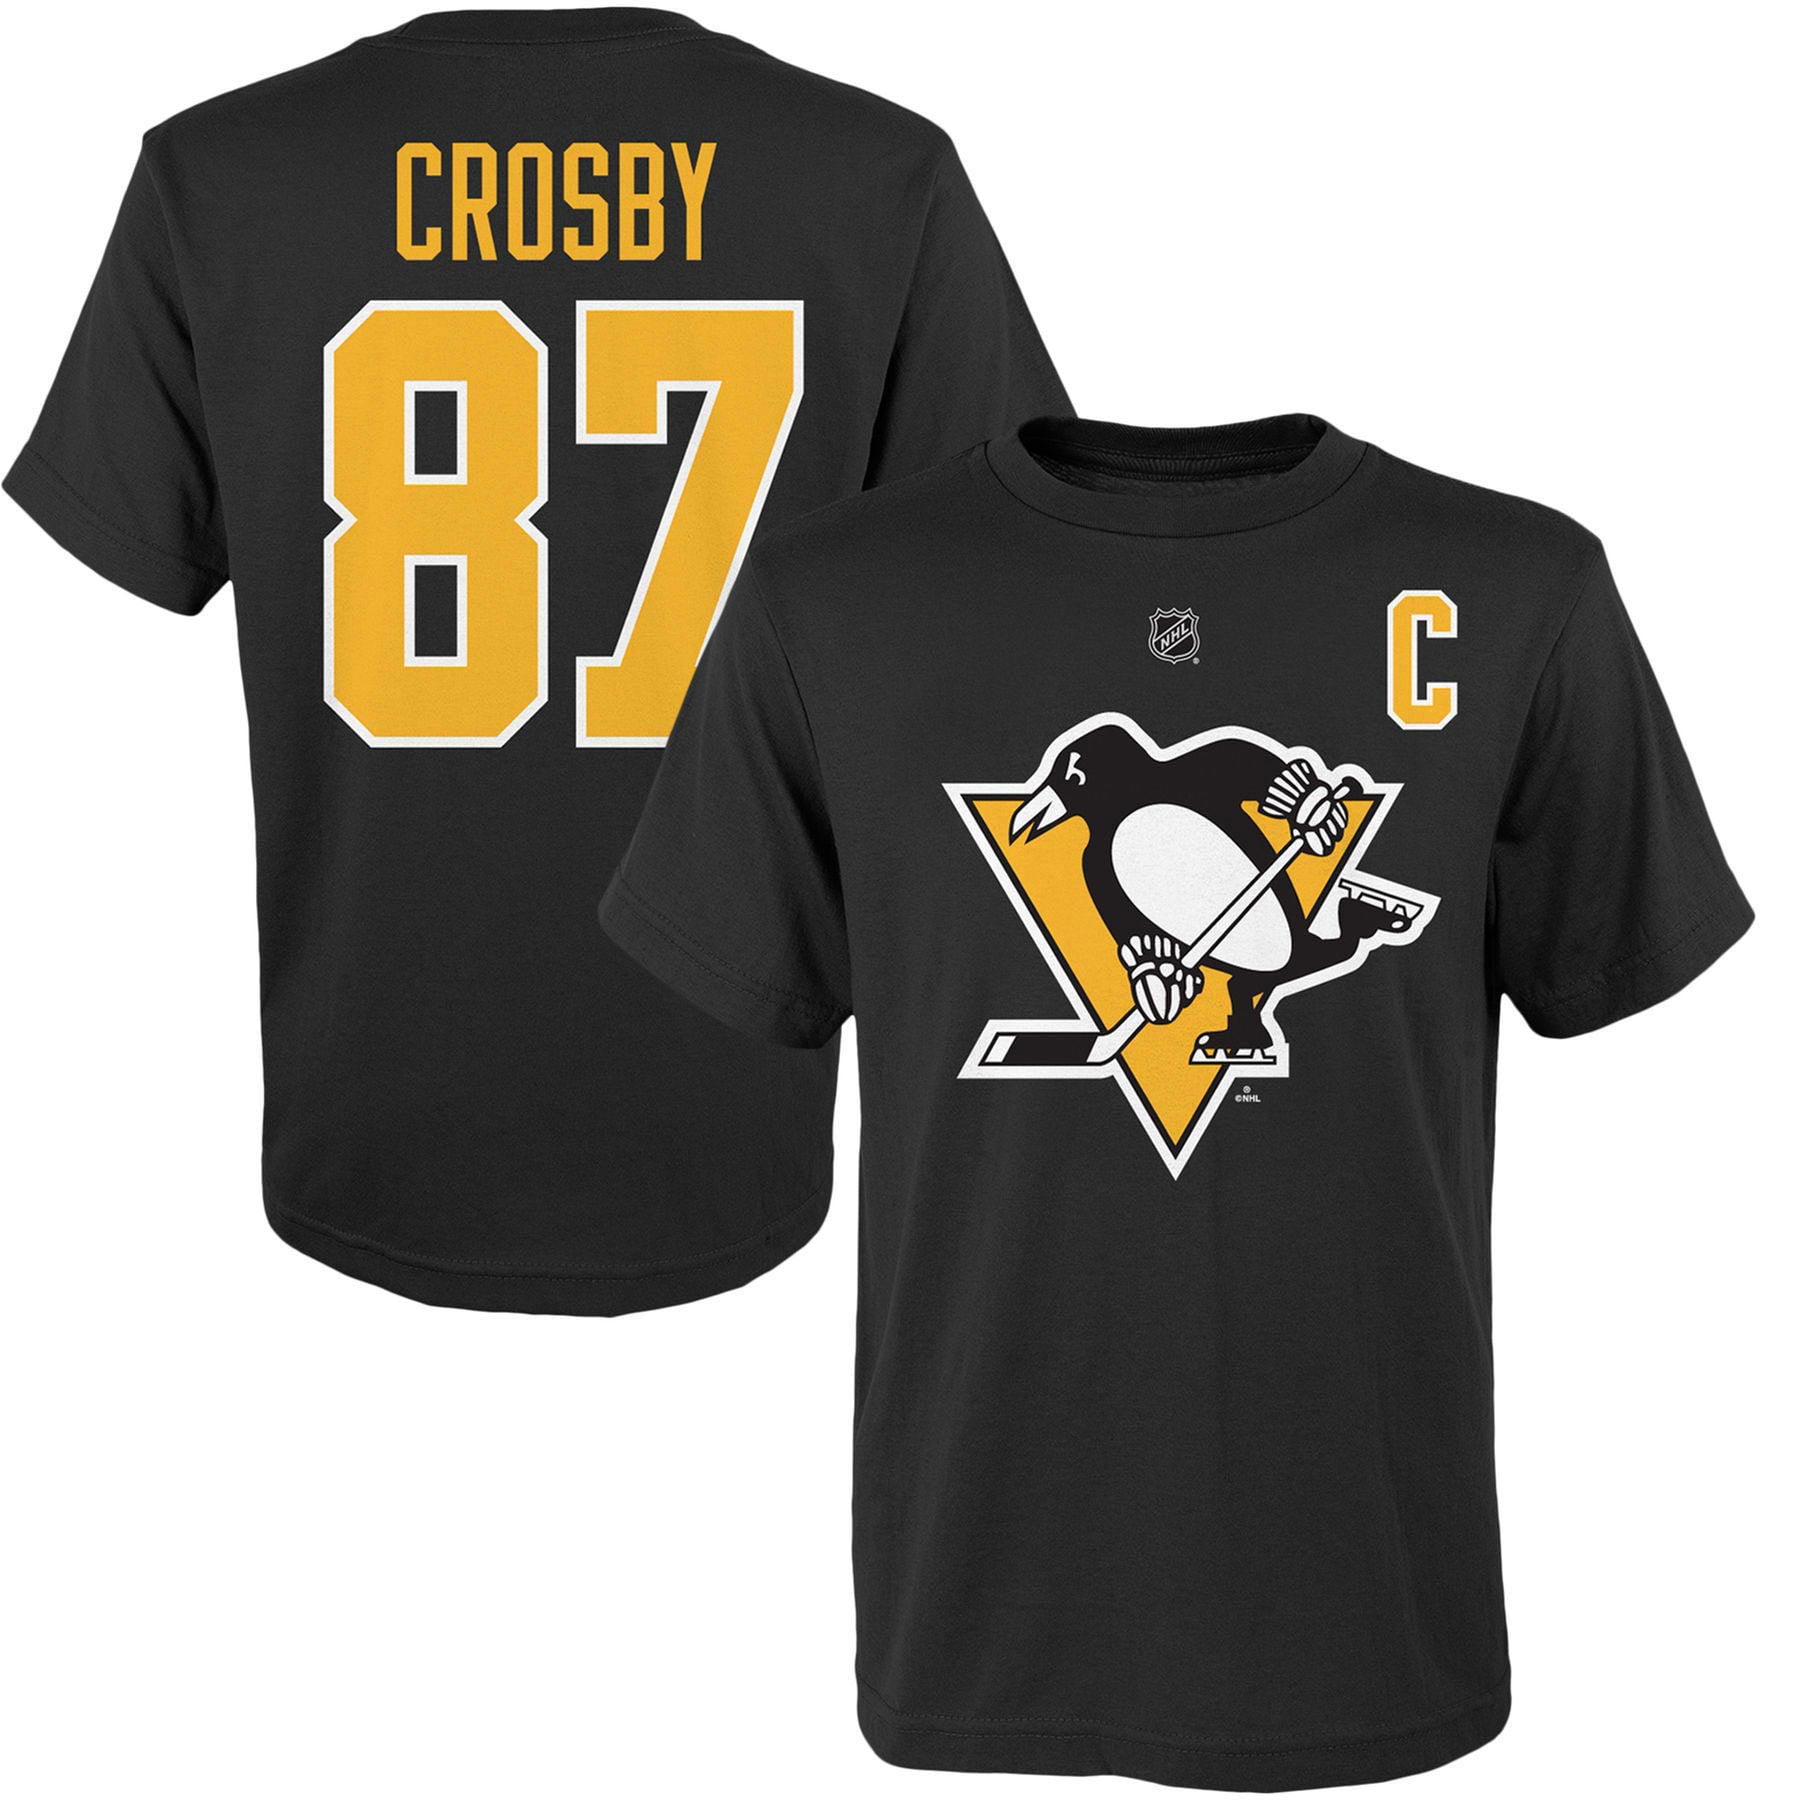 sidney crosby hockey school shirt